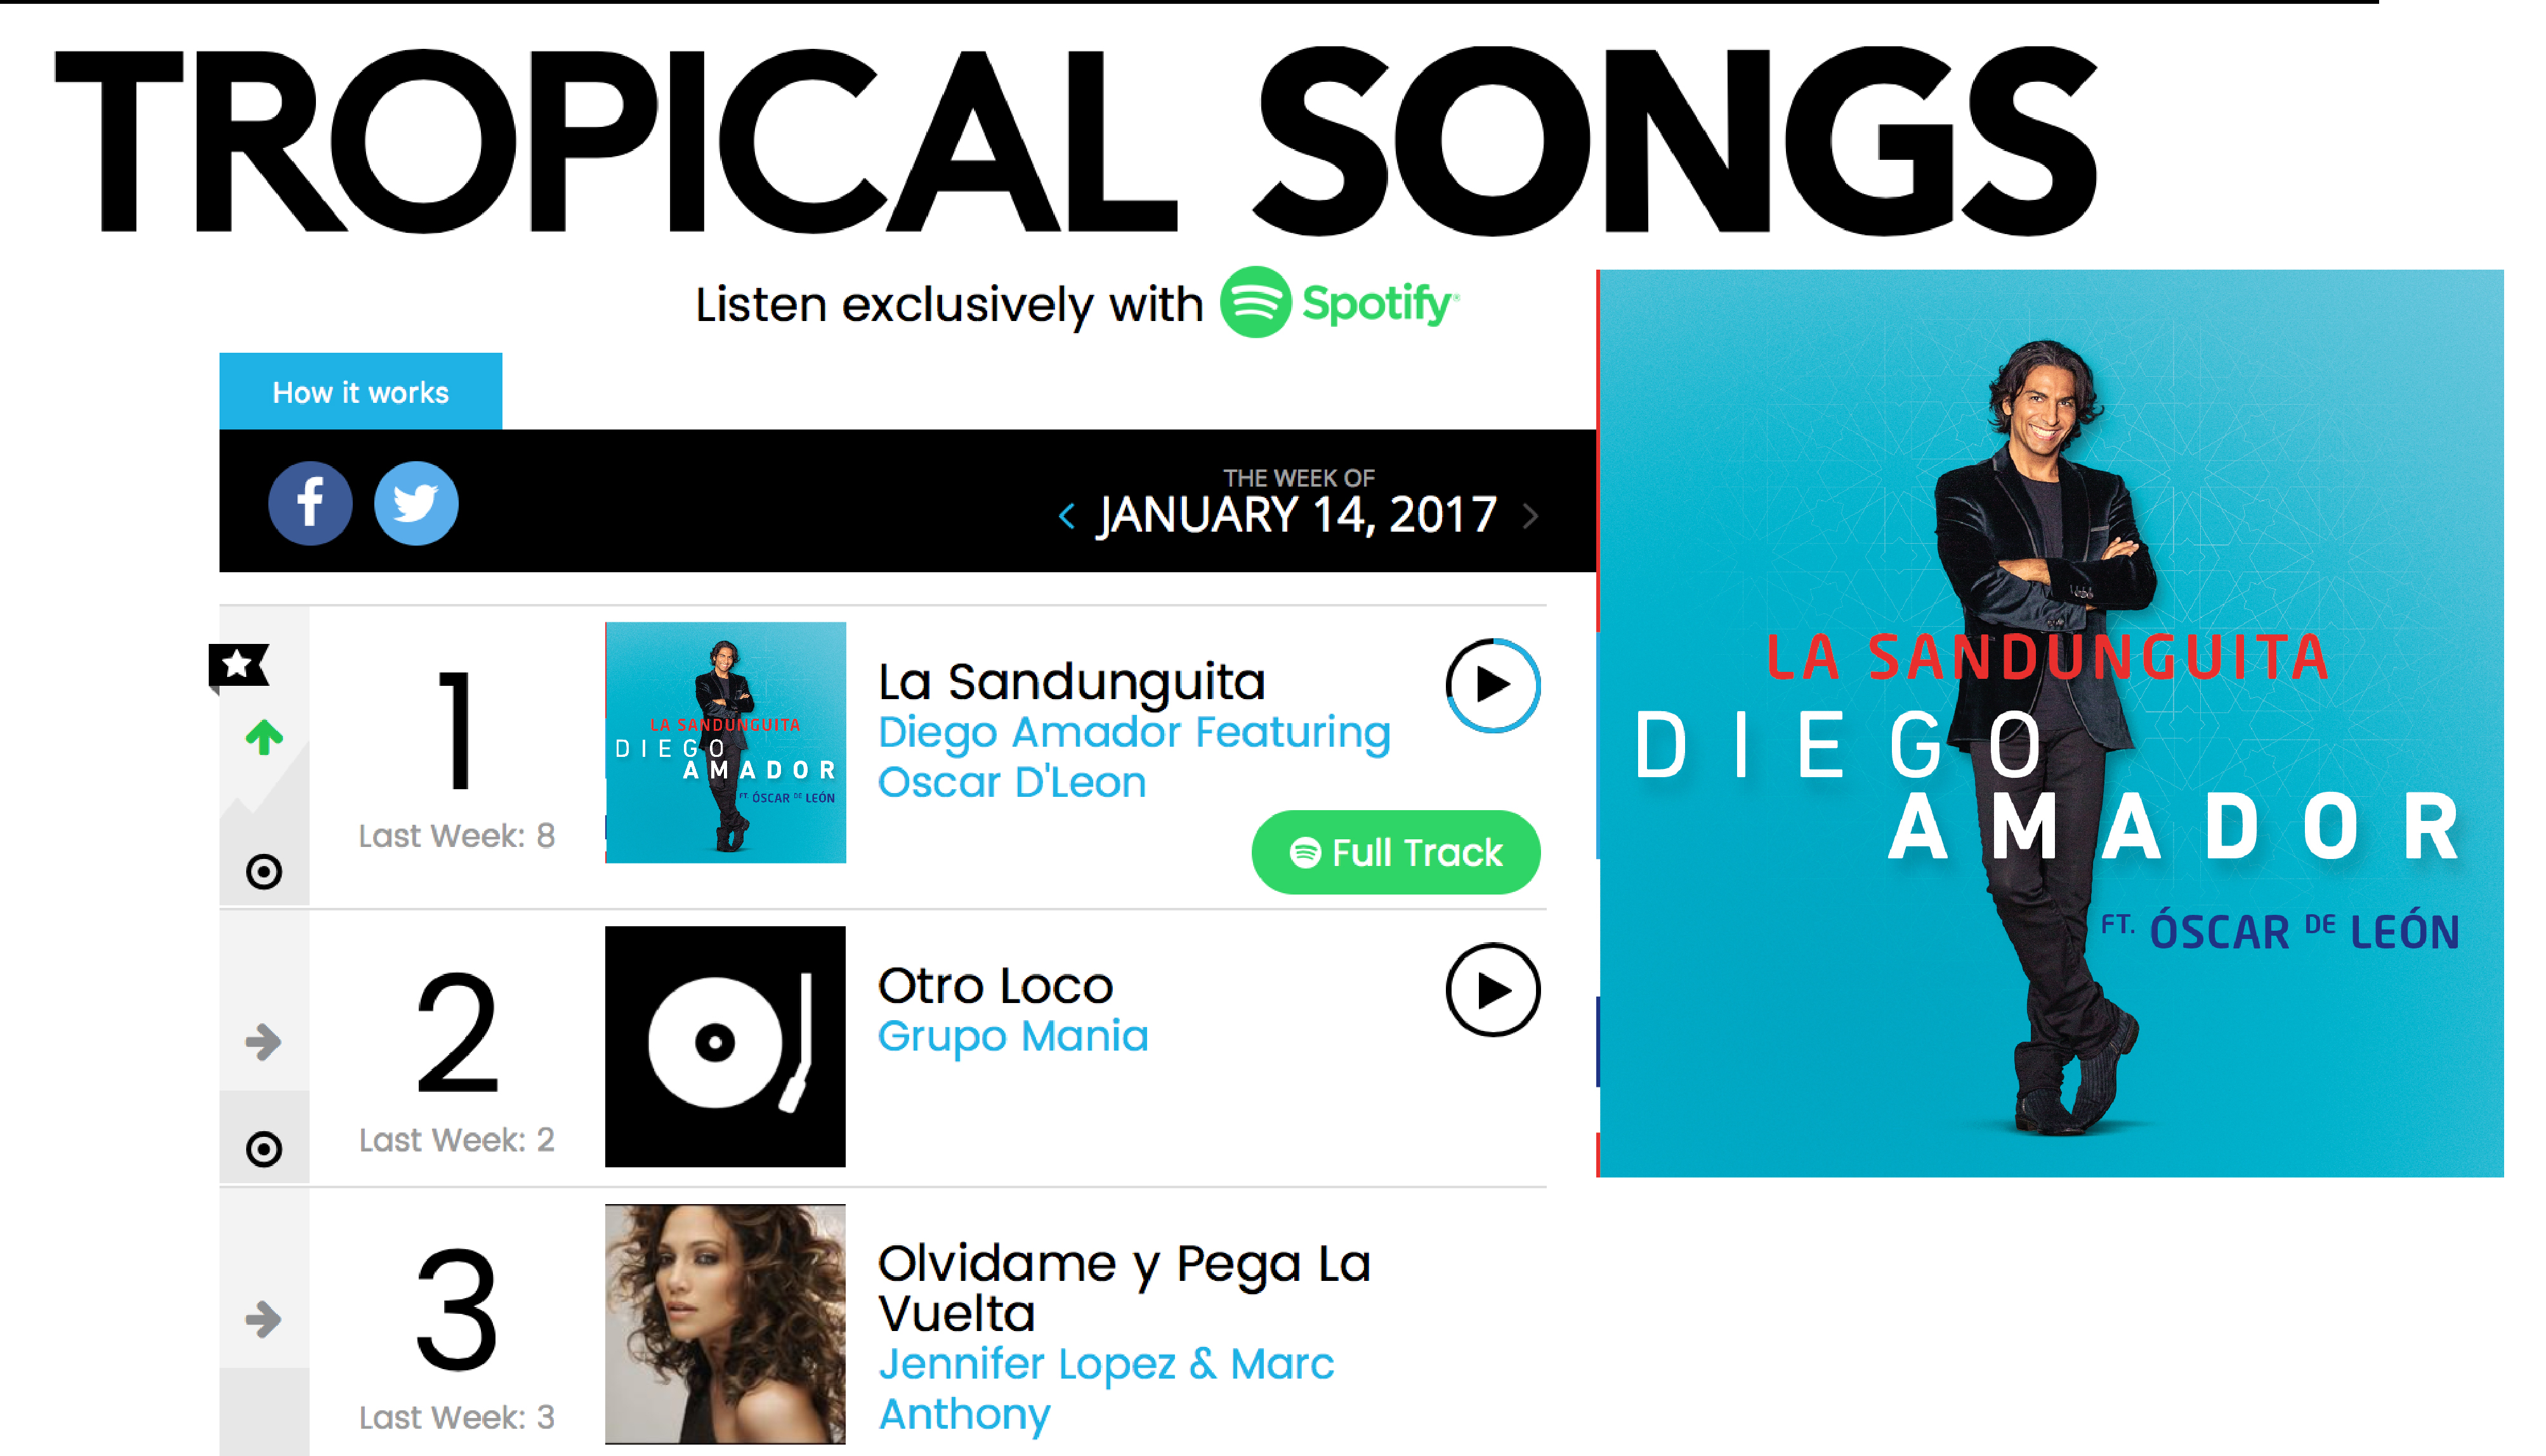 La Sandunguita top 1 on Billboard Chart